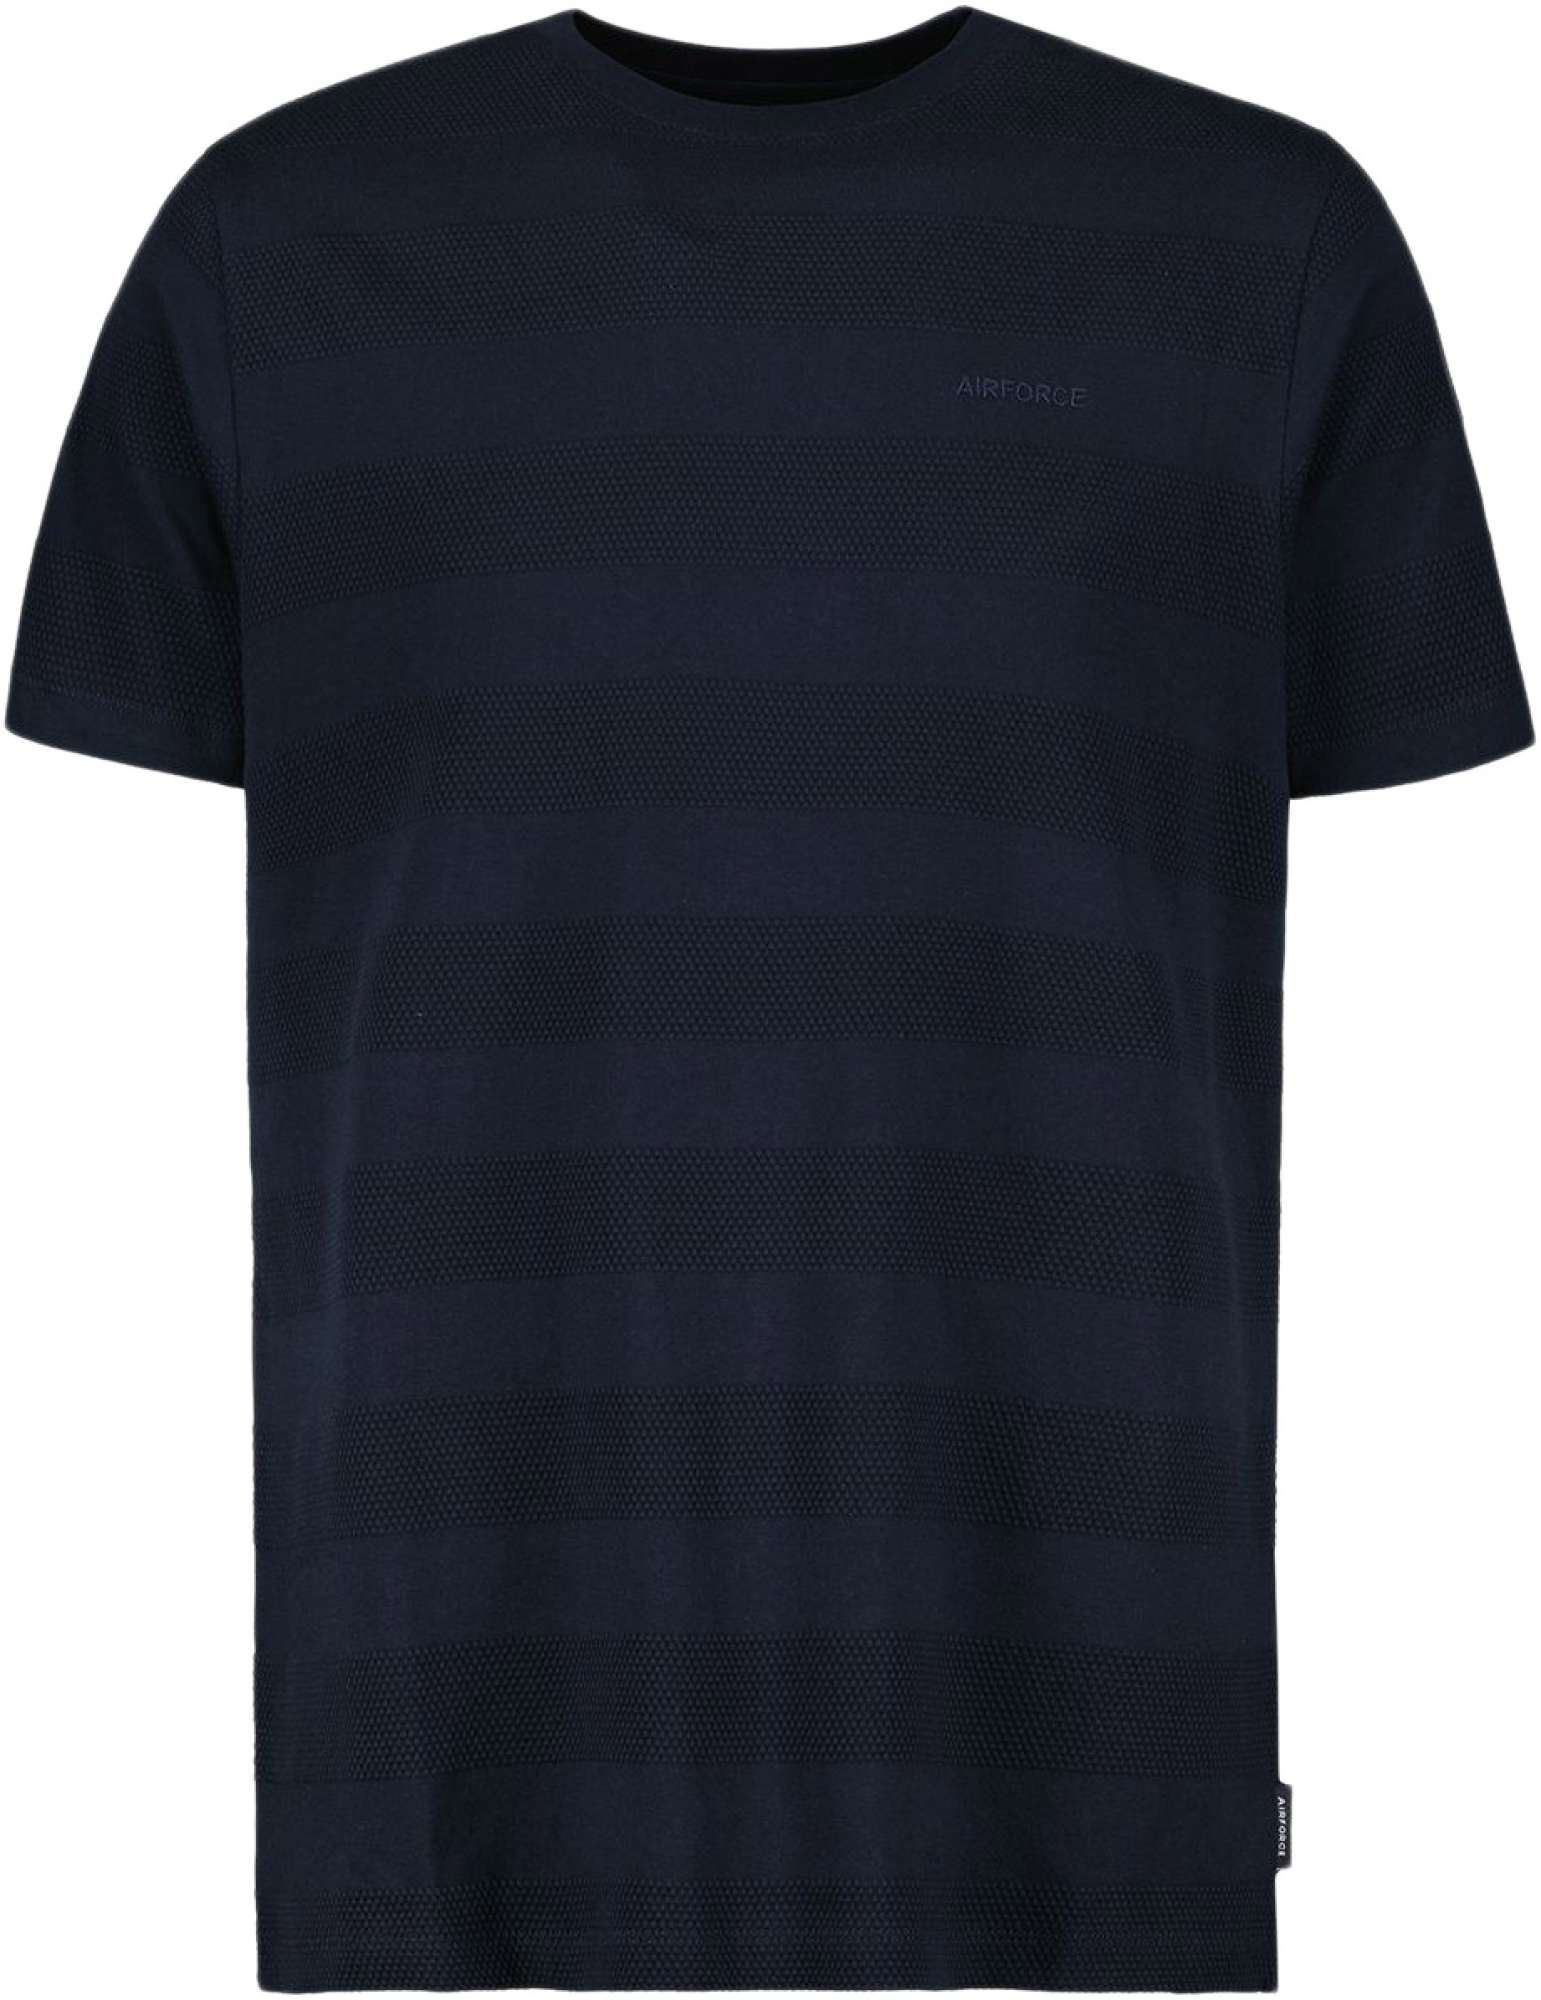 Afbeelding van Airforce T-shirt striped mix dark navy blue